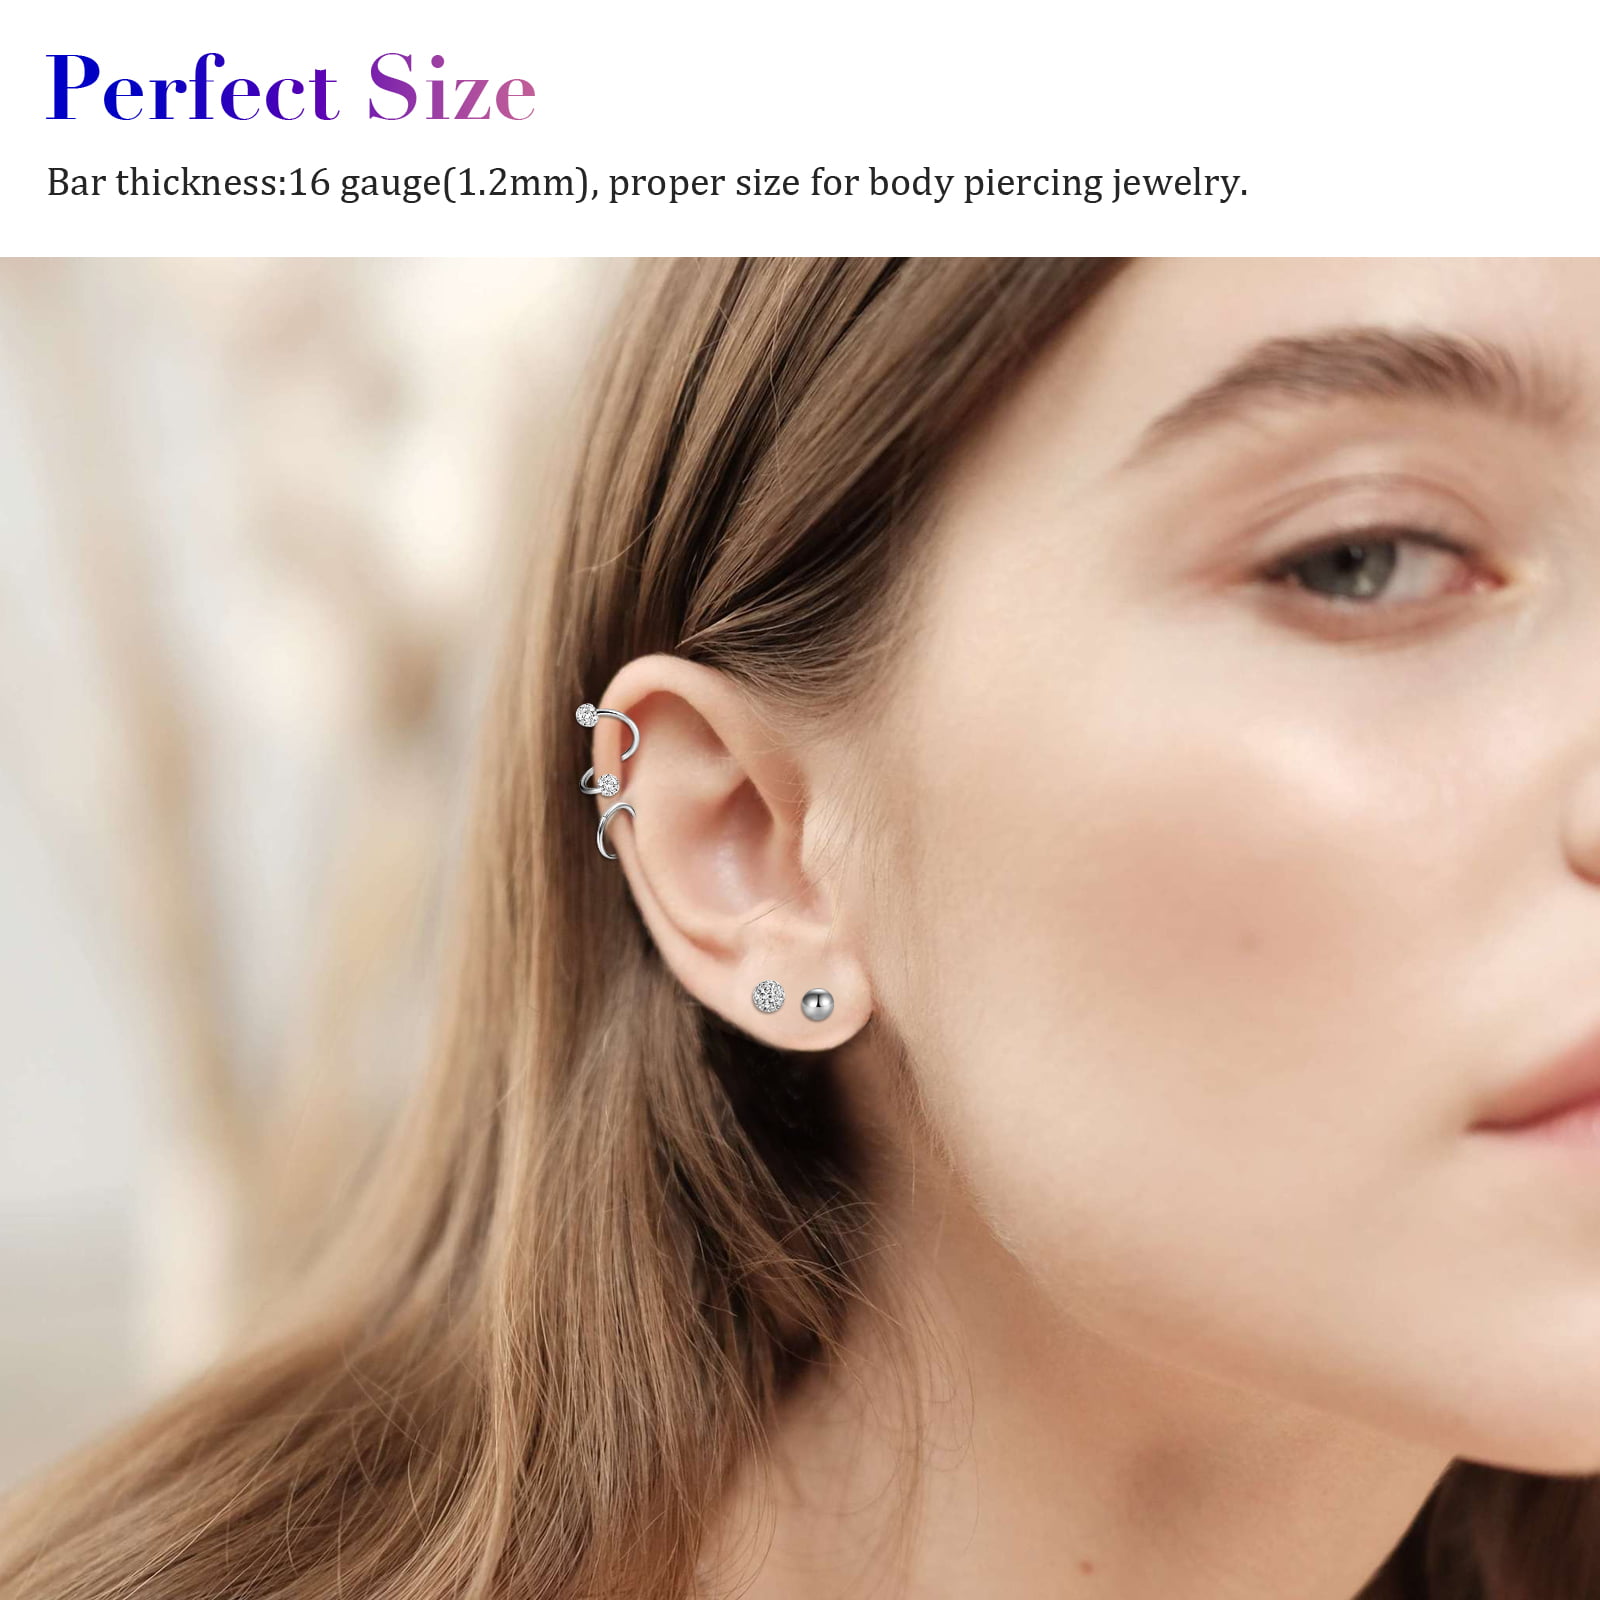 17pcs 16G Tragus Earrings EEEkit Stainless Steel Cartilage Helix Earrings  Conch Earring Studs Hoop Earring Lip Rings Labret Studs Piercing Jewelry  for Women Men Silver  Walmartcom